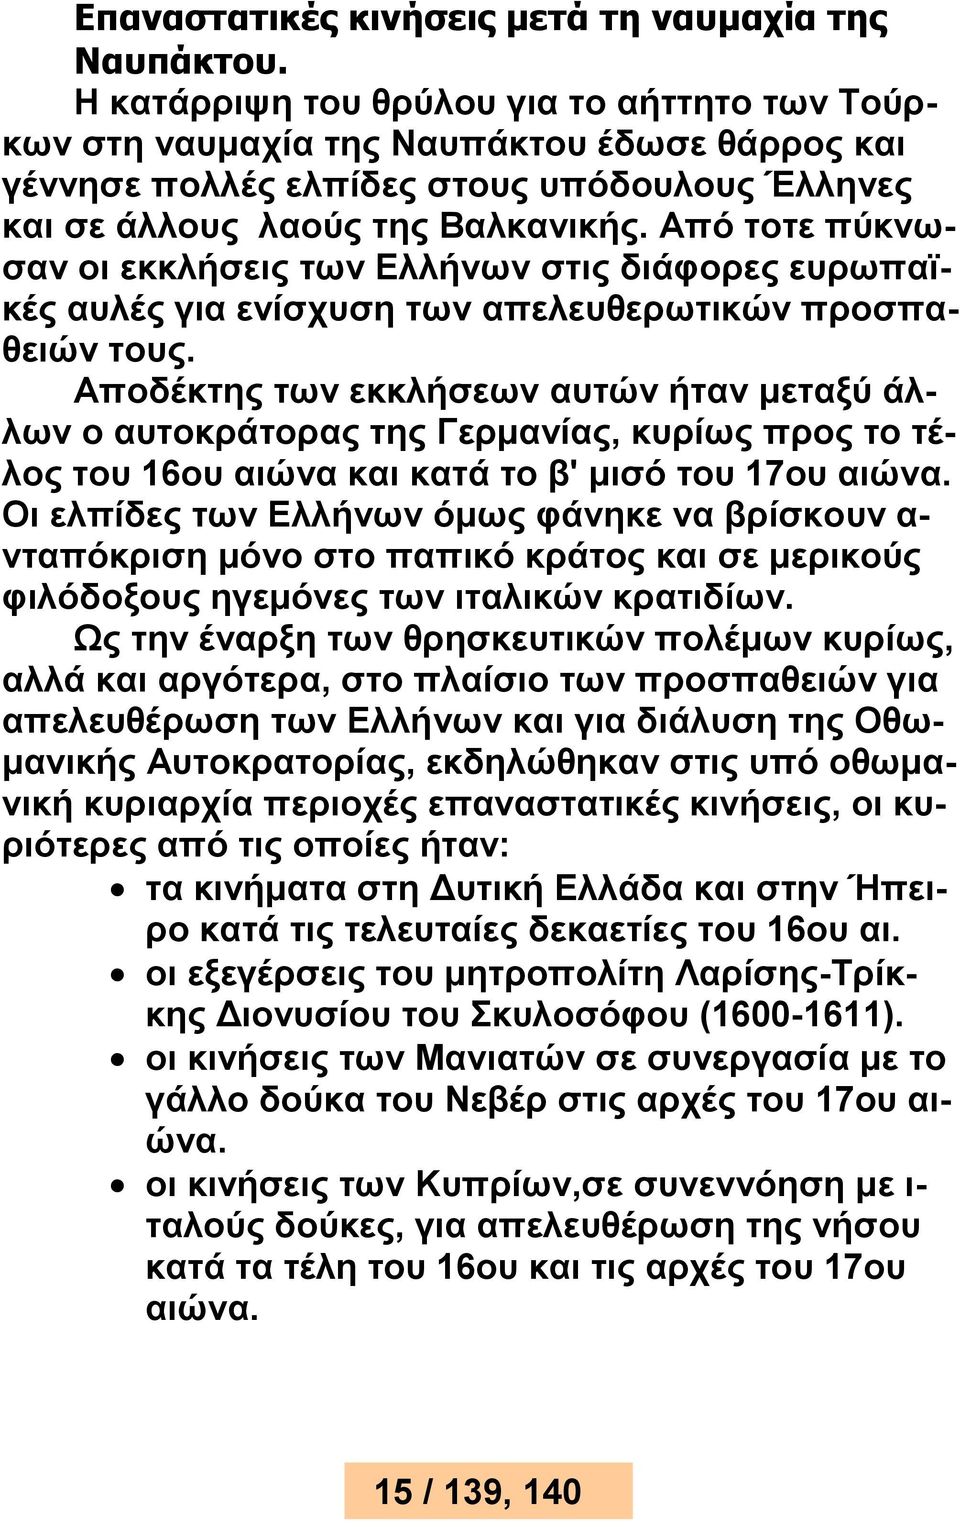 Από τοτε πύκνωσαν οι εκκλήσεις των Ελλήνων στις διάφορες ευρωπαϊκές αυλές για ενίσχυση των απελευθερωτικών προσπαθειών τους.